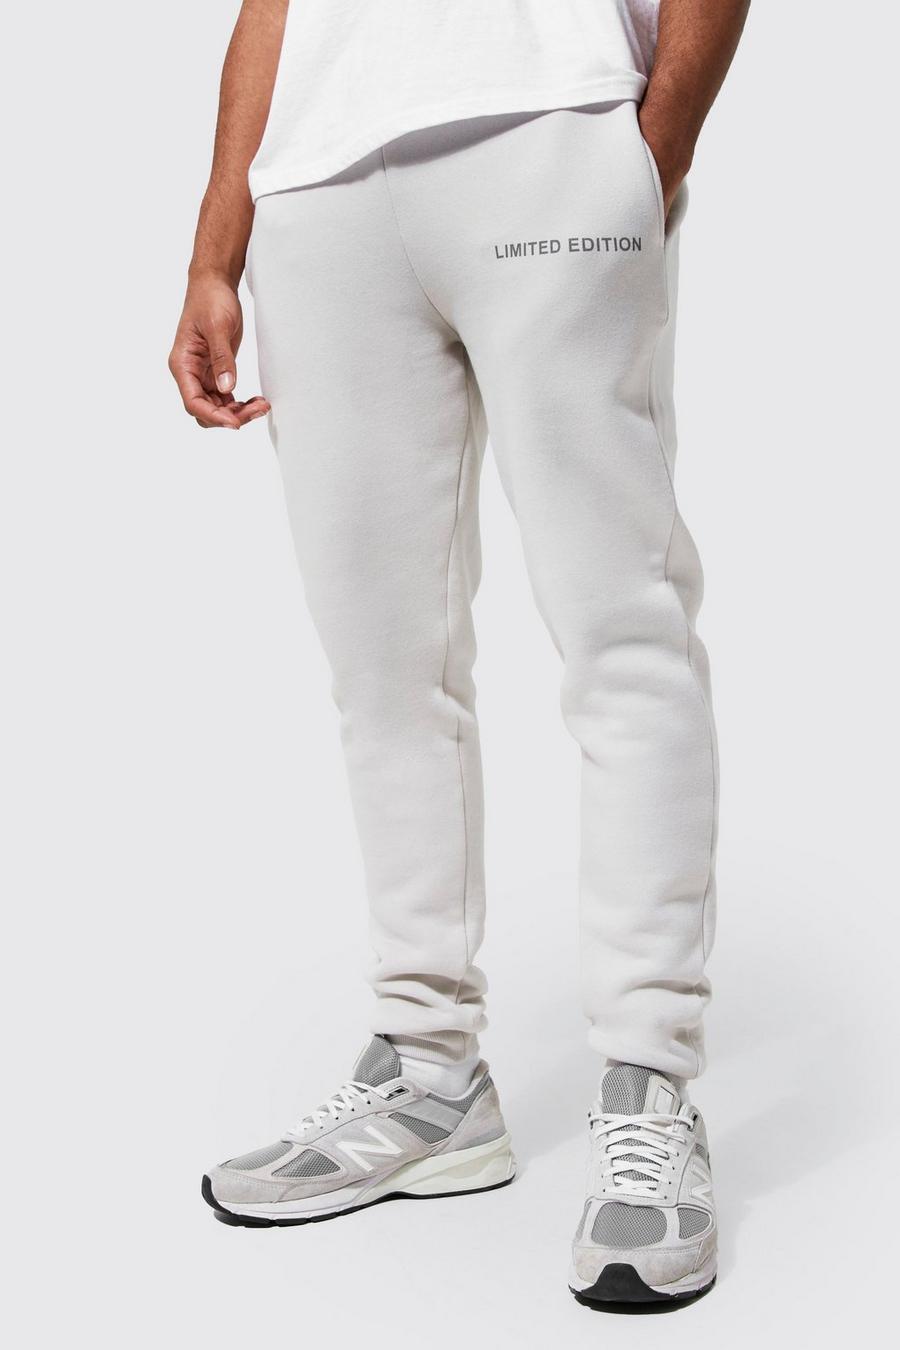 Pantaloni tuta Limited Edition Skinny Fit, Grey grigio image number 1